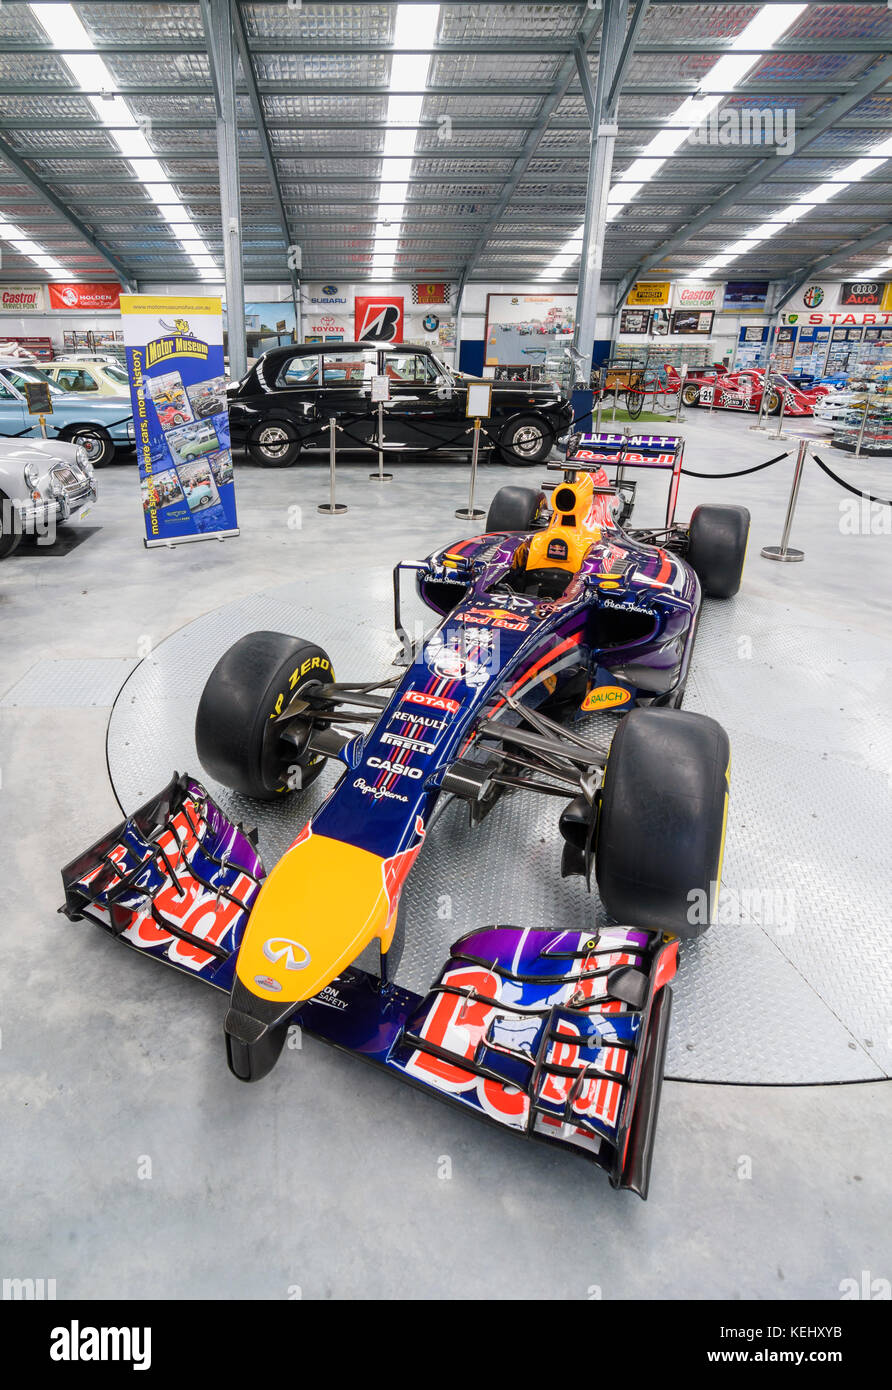 Daniel Ricciardo's Red Bull voiture de course de Formule 1 à l'affiche au Musée du moteur de WA, Whiteman Park dans la Swan Valley, Perth, Australie occidentale Banque D'Images